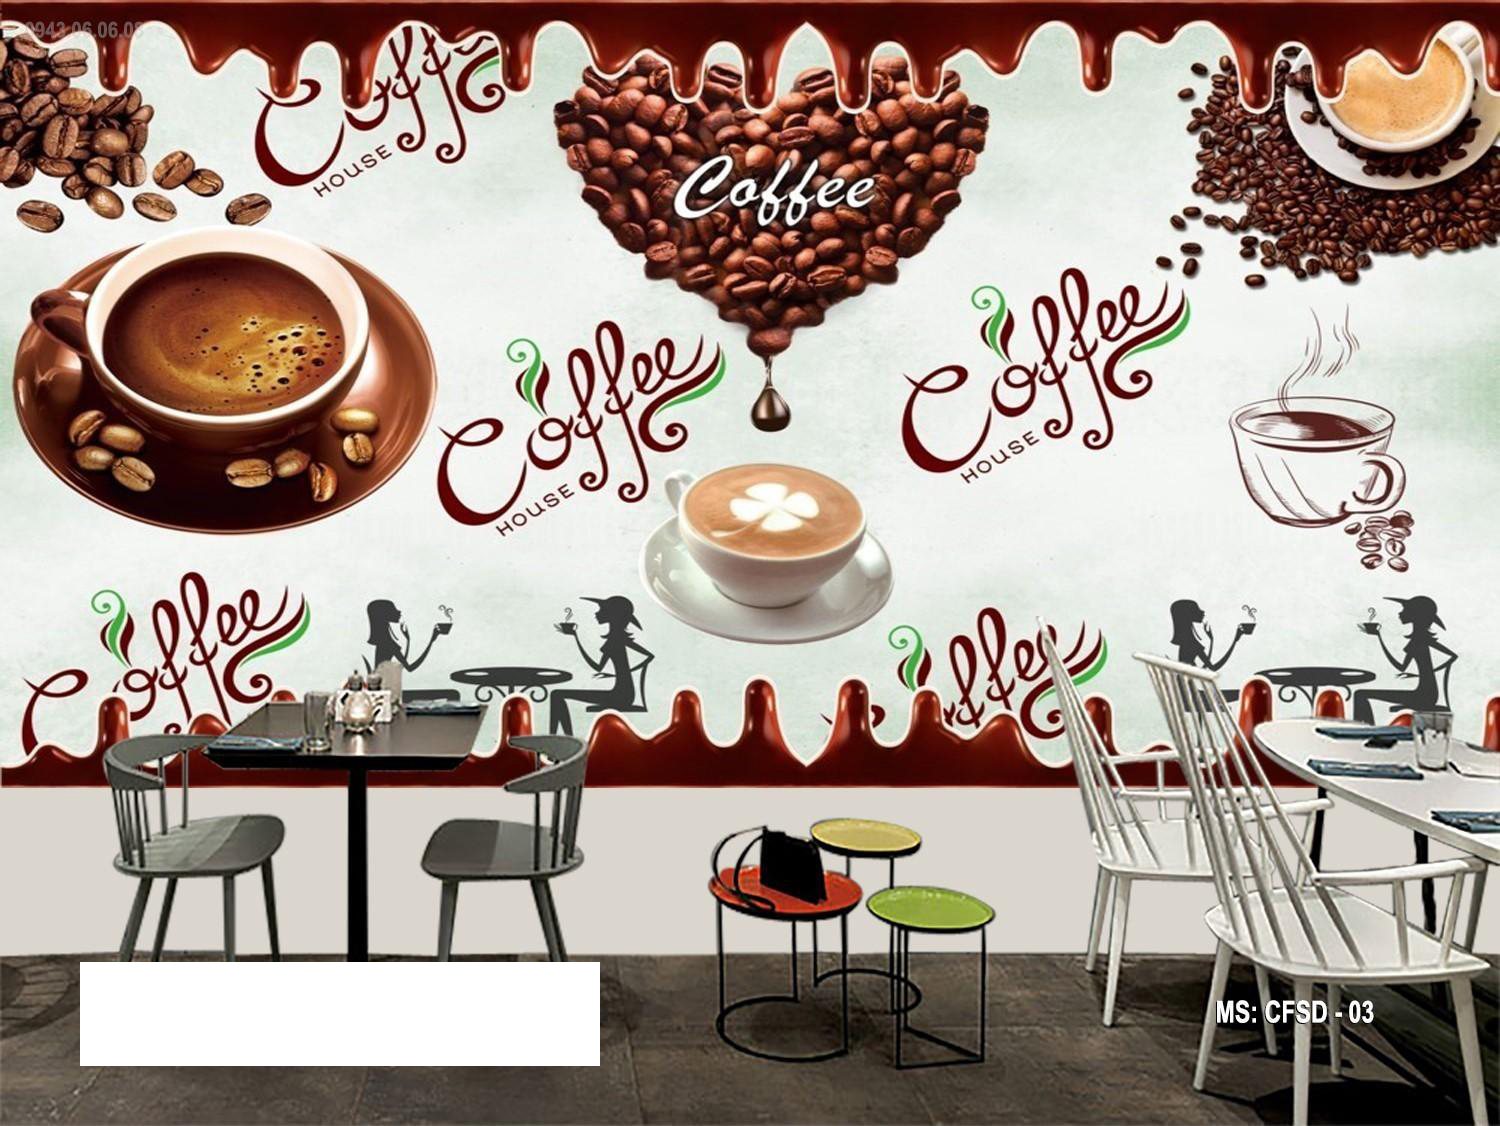 Tranh dán tường trang trí quán cà phê TC53 | Lazada.vn